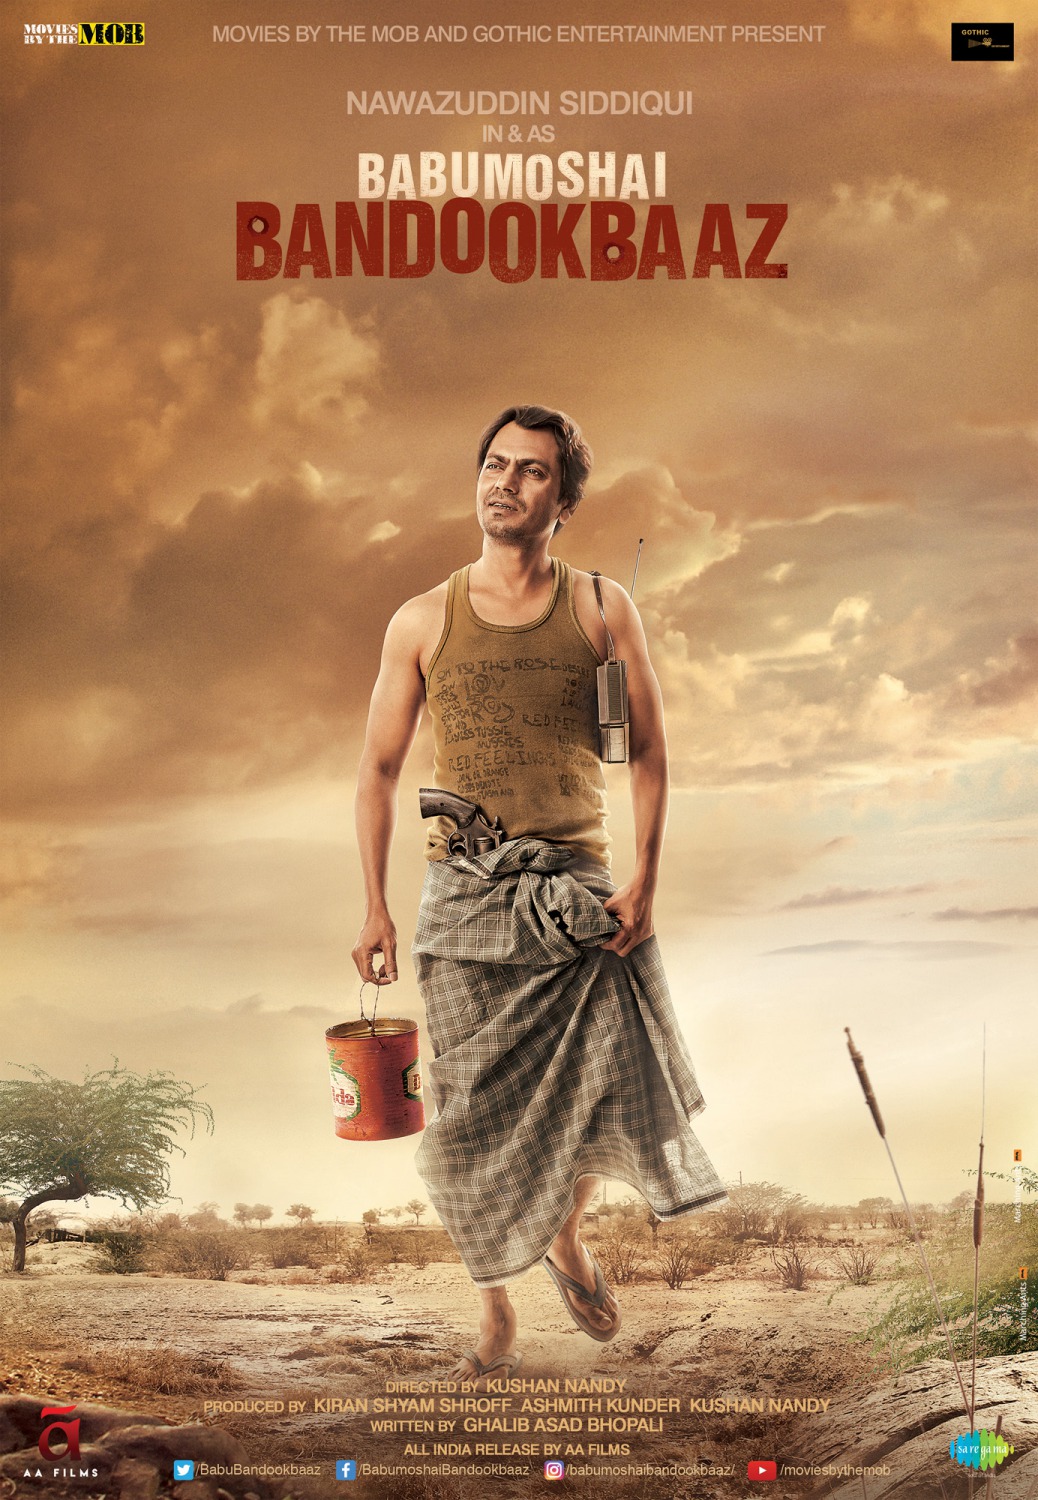 Extra Large Movie Poster Image for Babumoshai Bandookbaaz (#4 of 6)